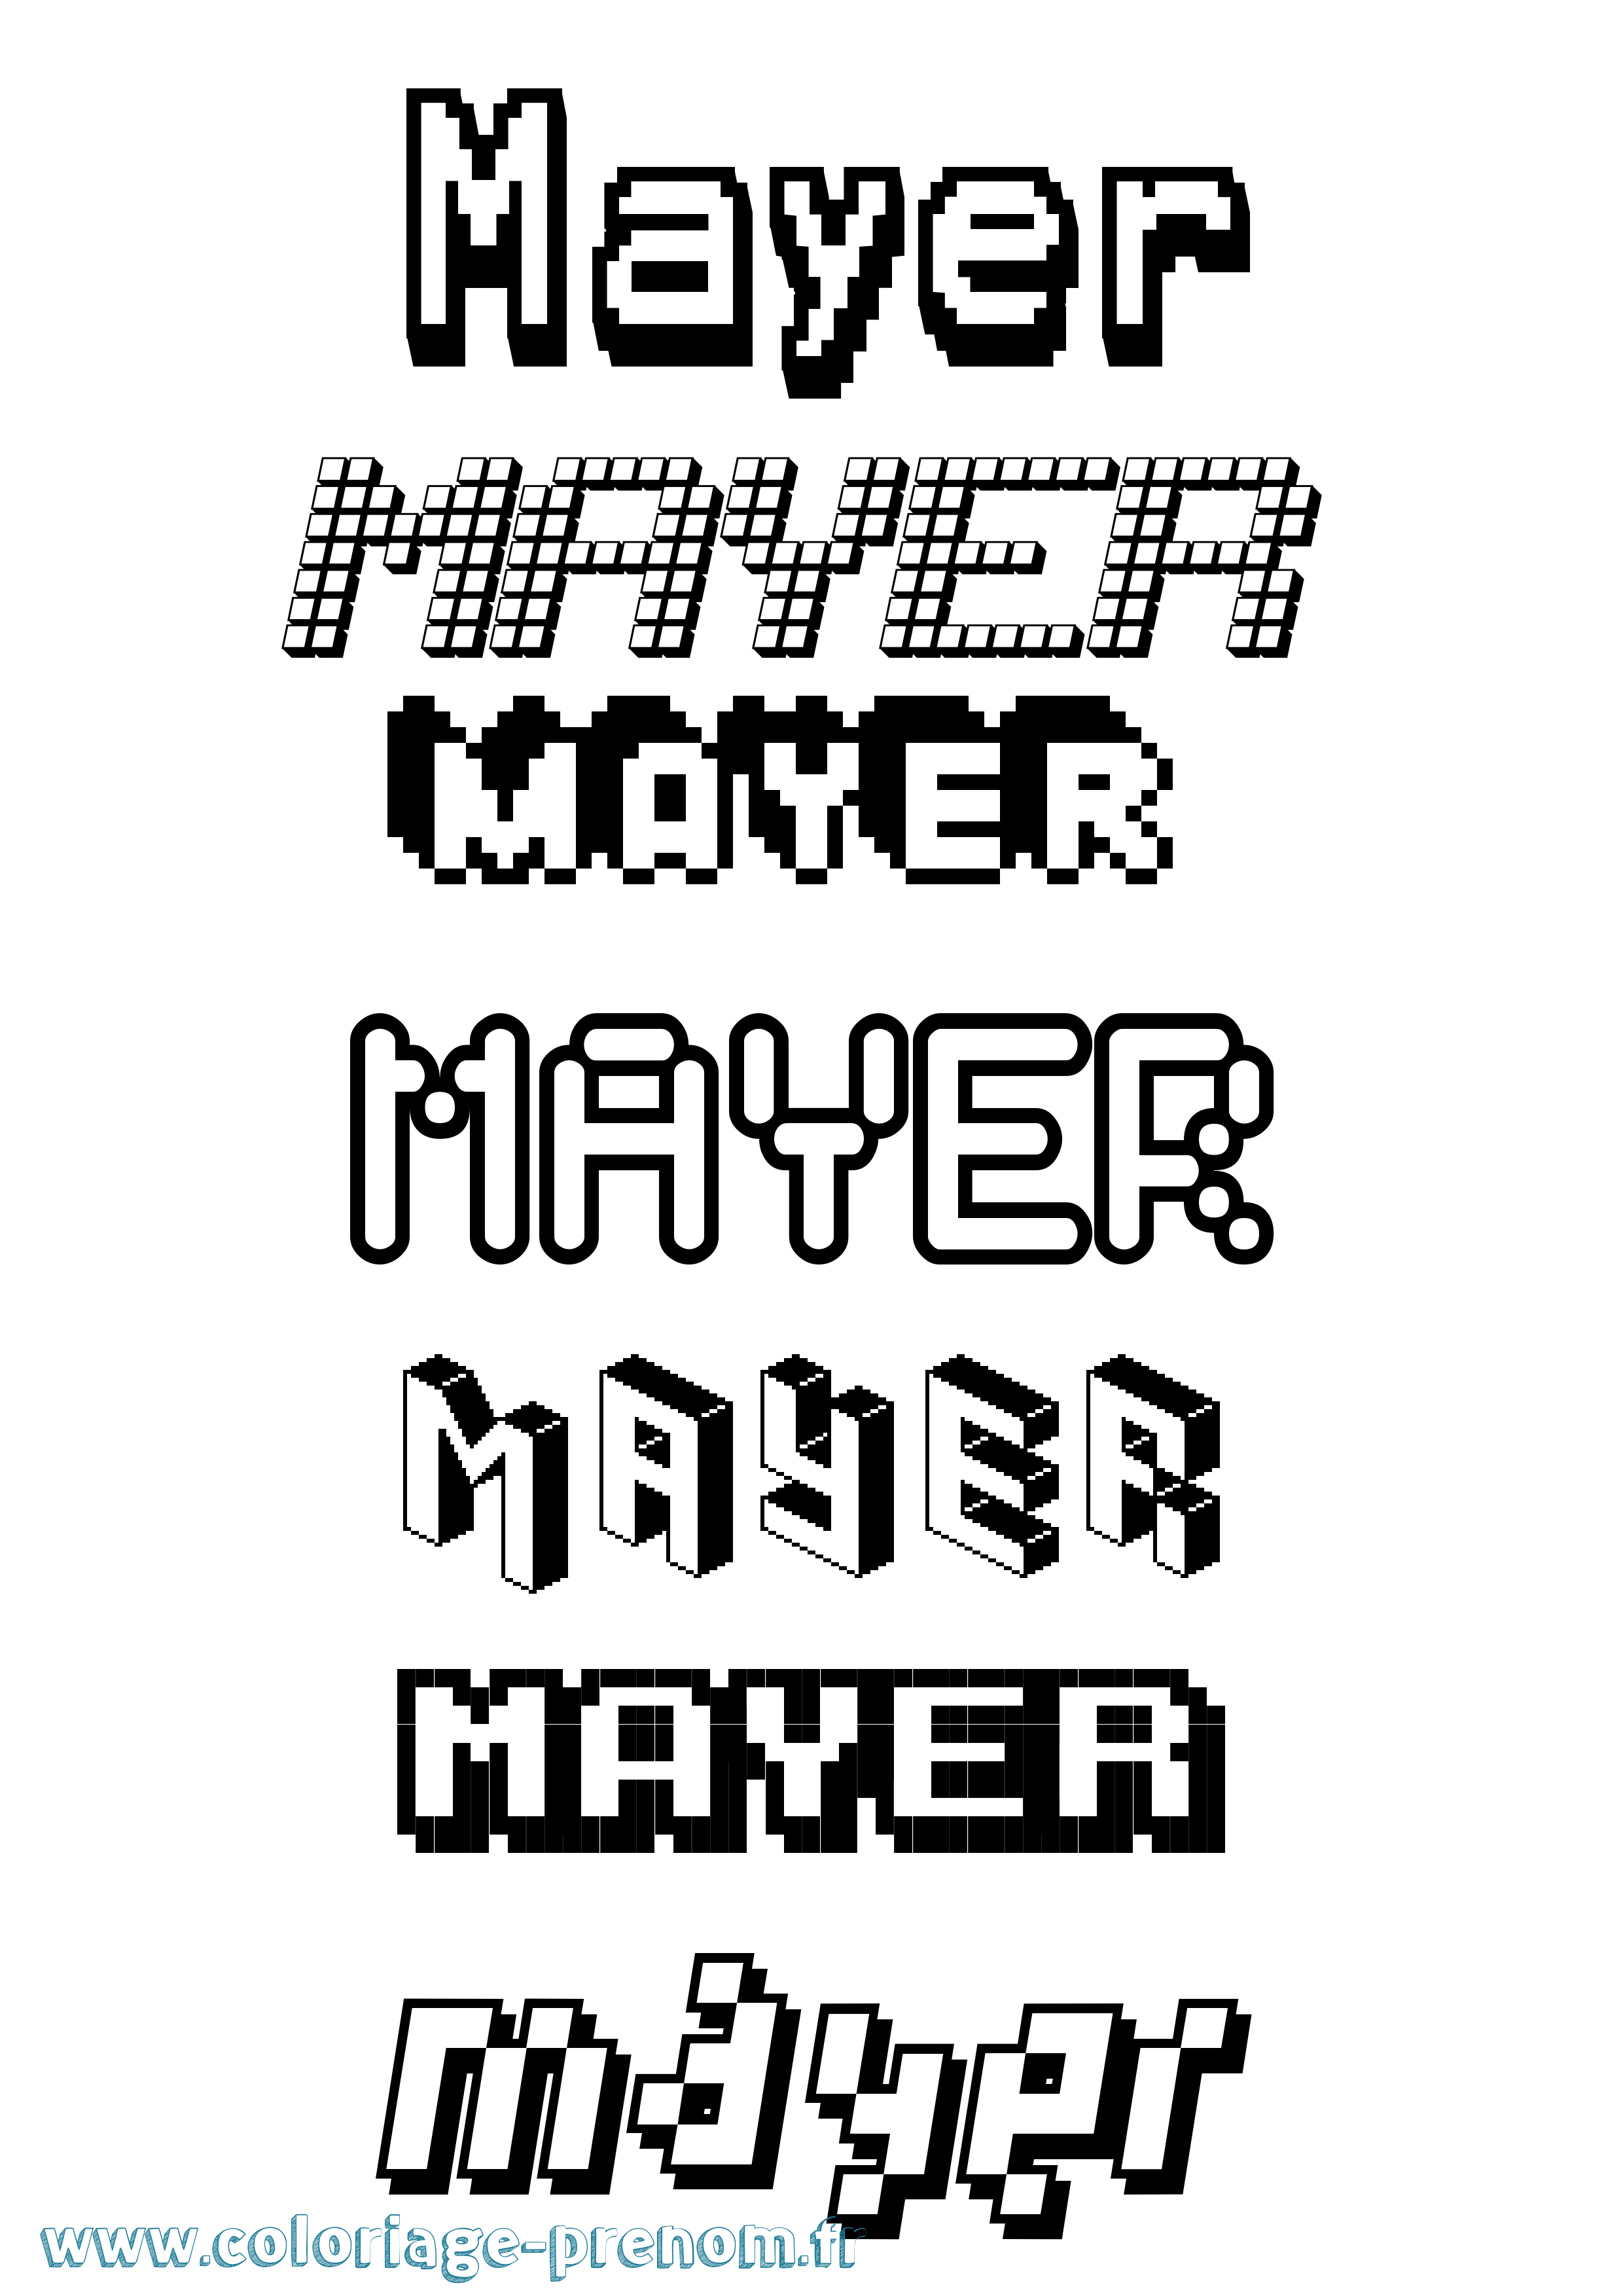 Coloriage prénom Mayer Pixel